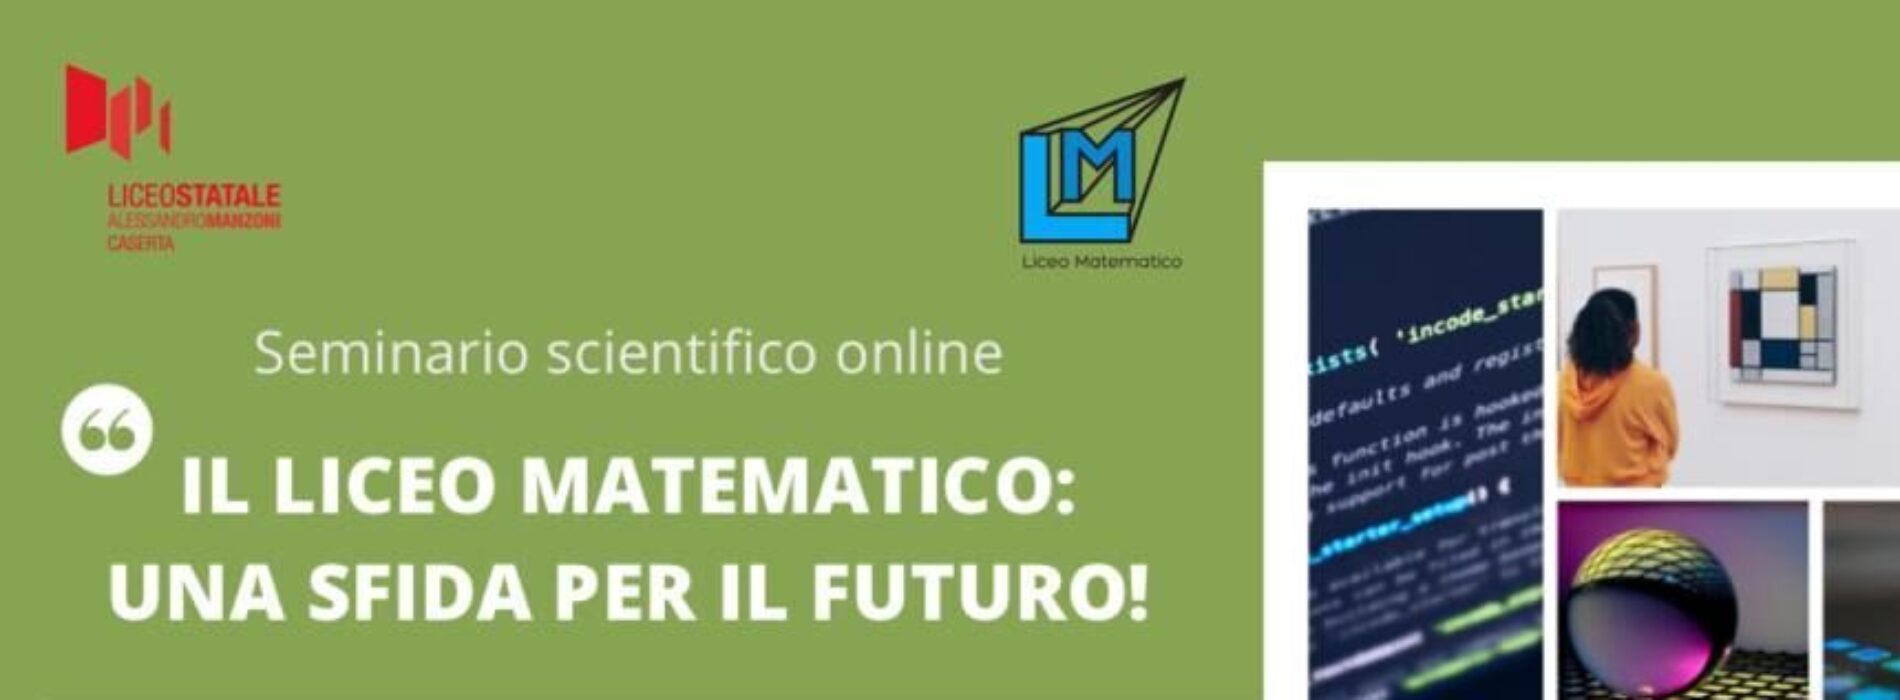 Liceo Matematico, sfida per il futuro. Seminario al Manzoni